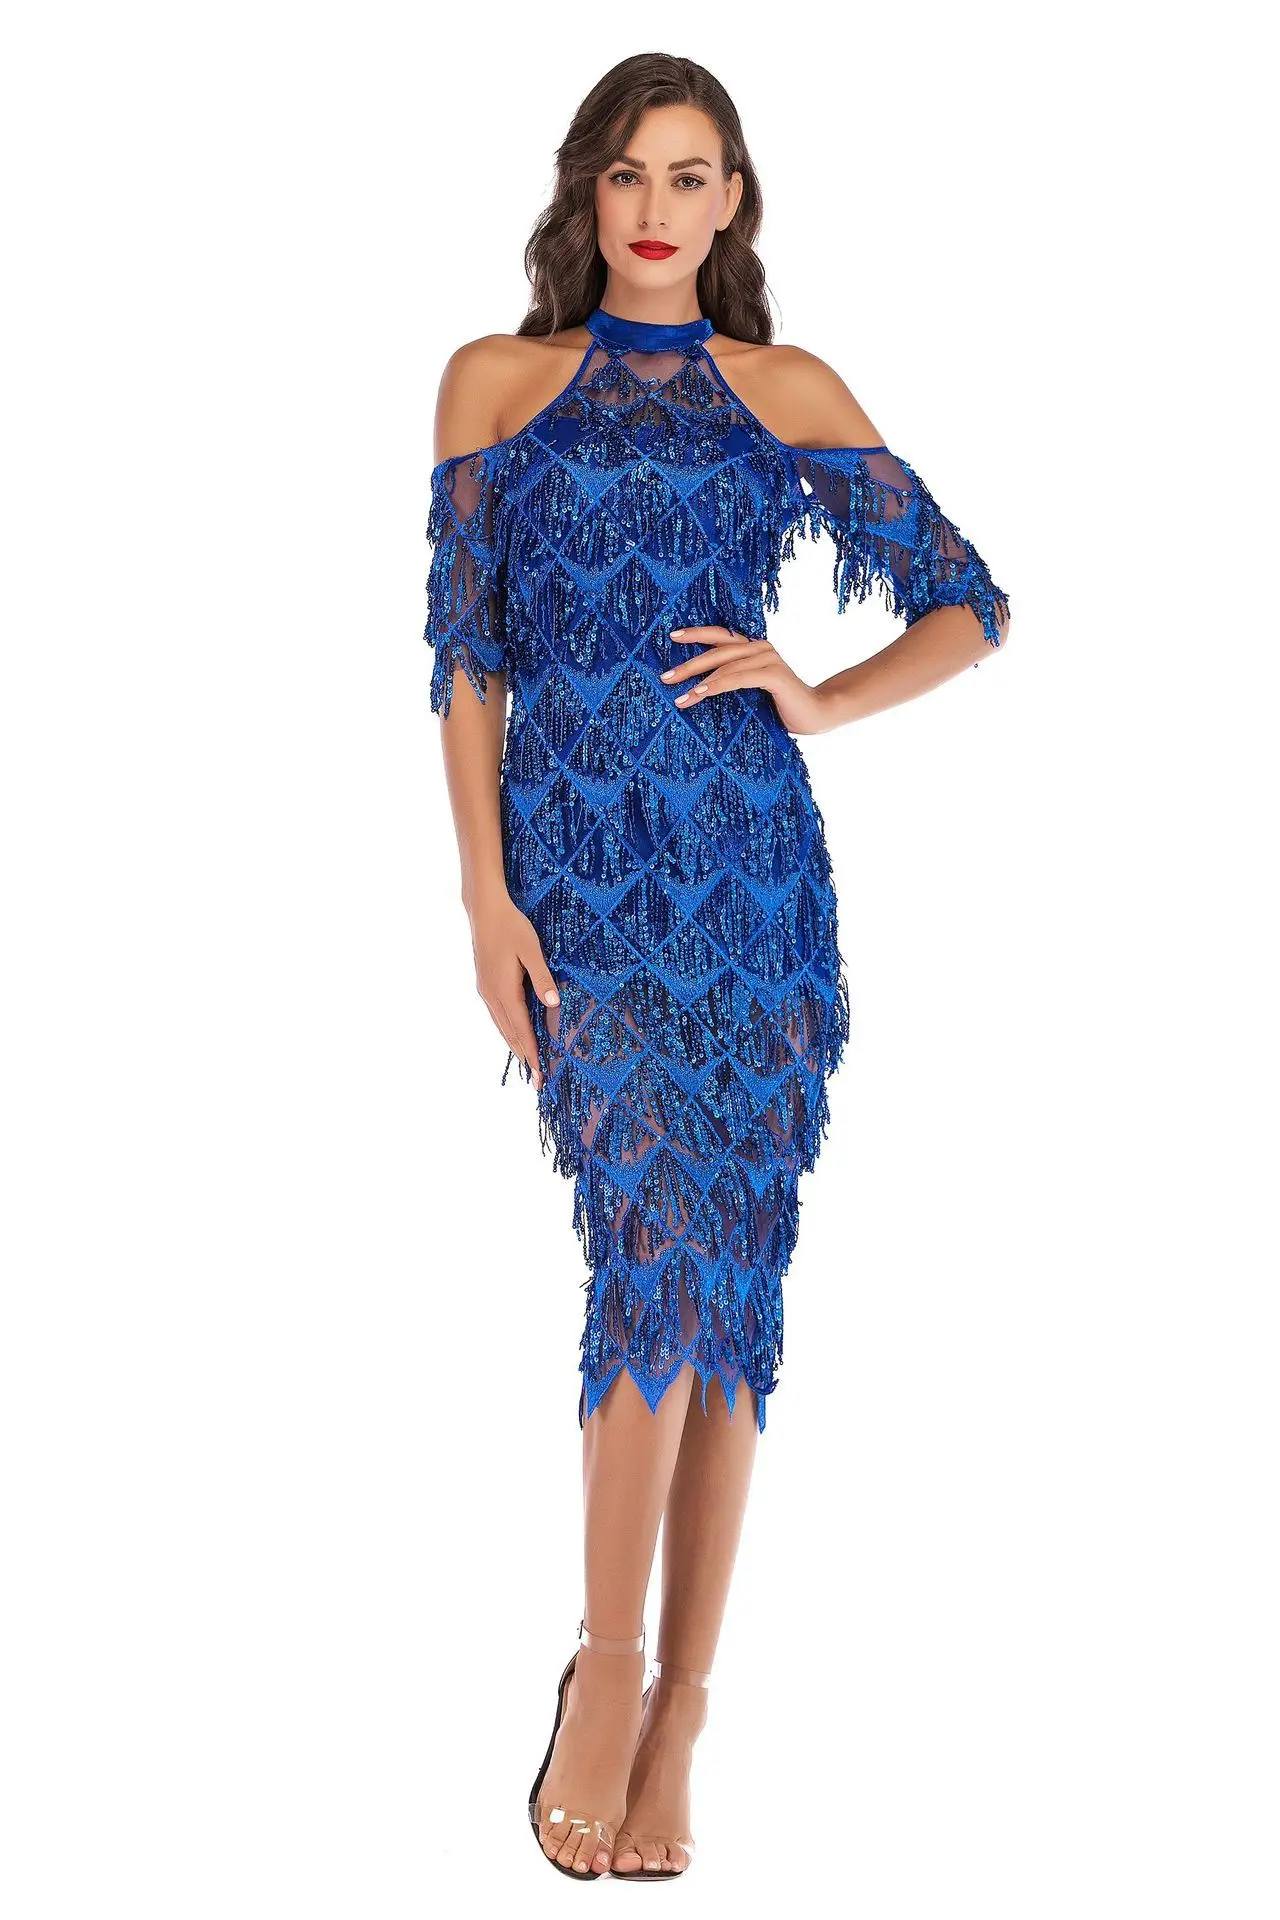 BacklakeGirls новое коктейльное платье из фатина Холтер рукава средней длины вырезанное платье для женщин длиной до колена с кисточками и бисером - Цвет: Hide blue